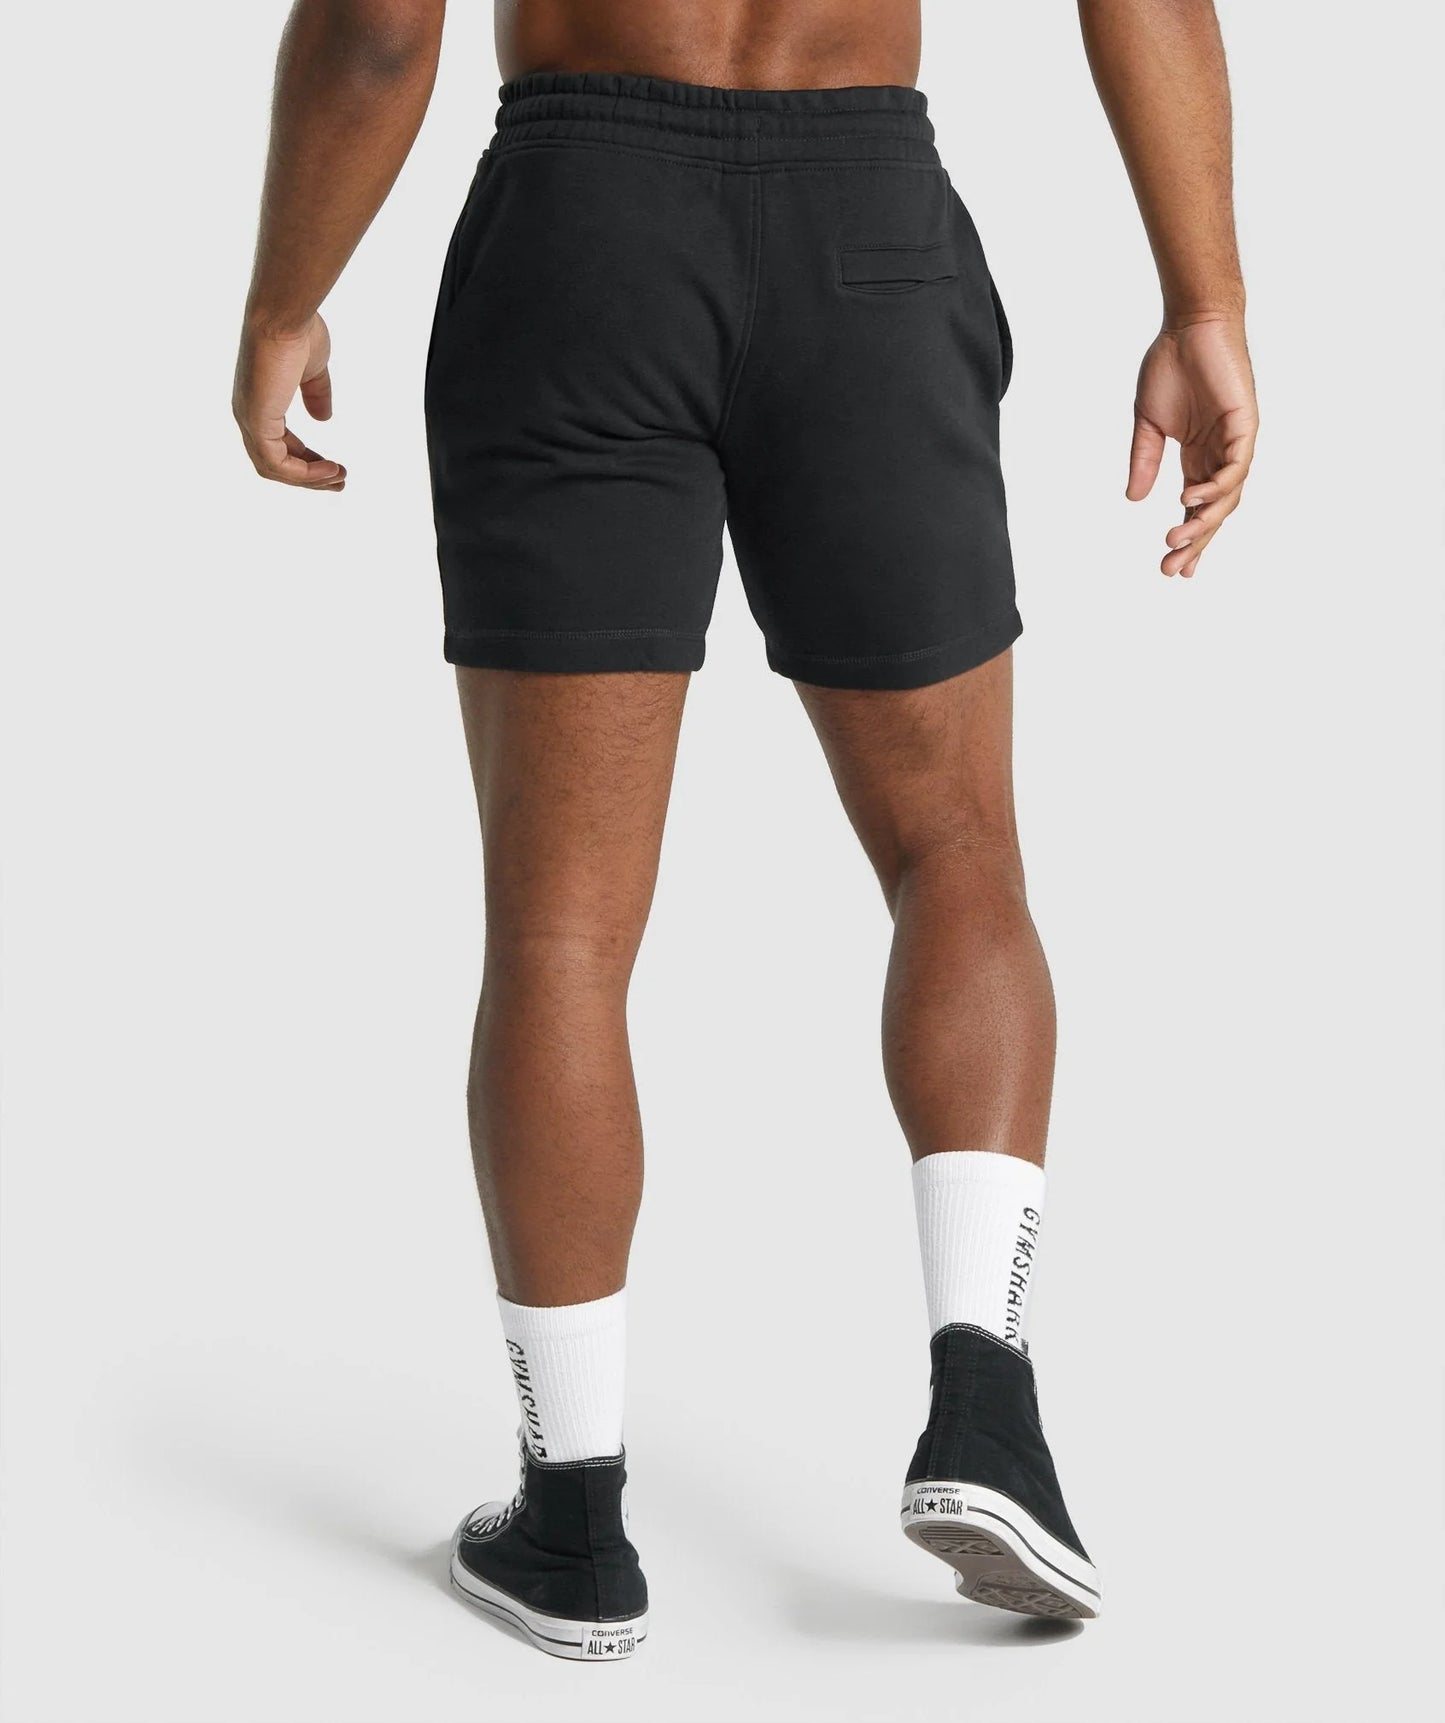 Gymshark Crest Shorts